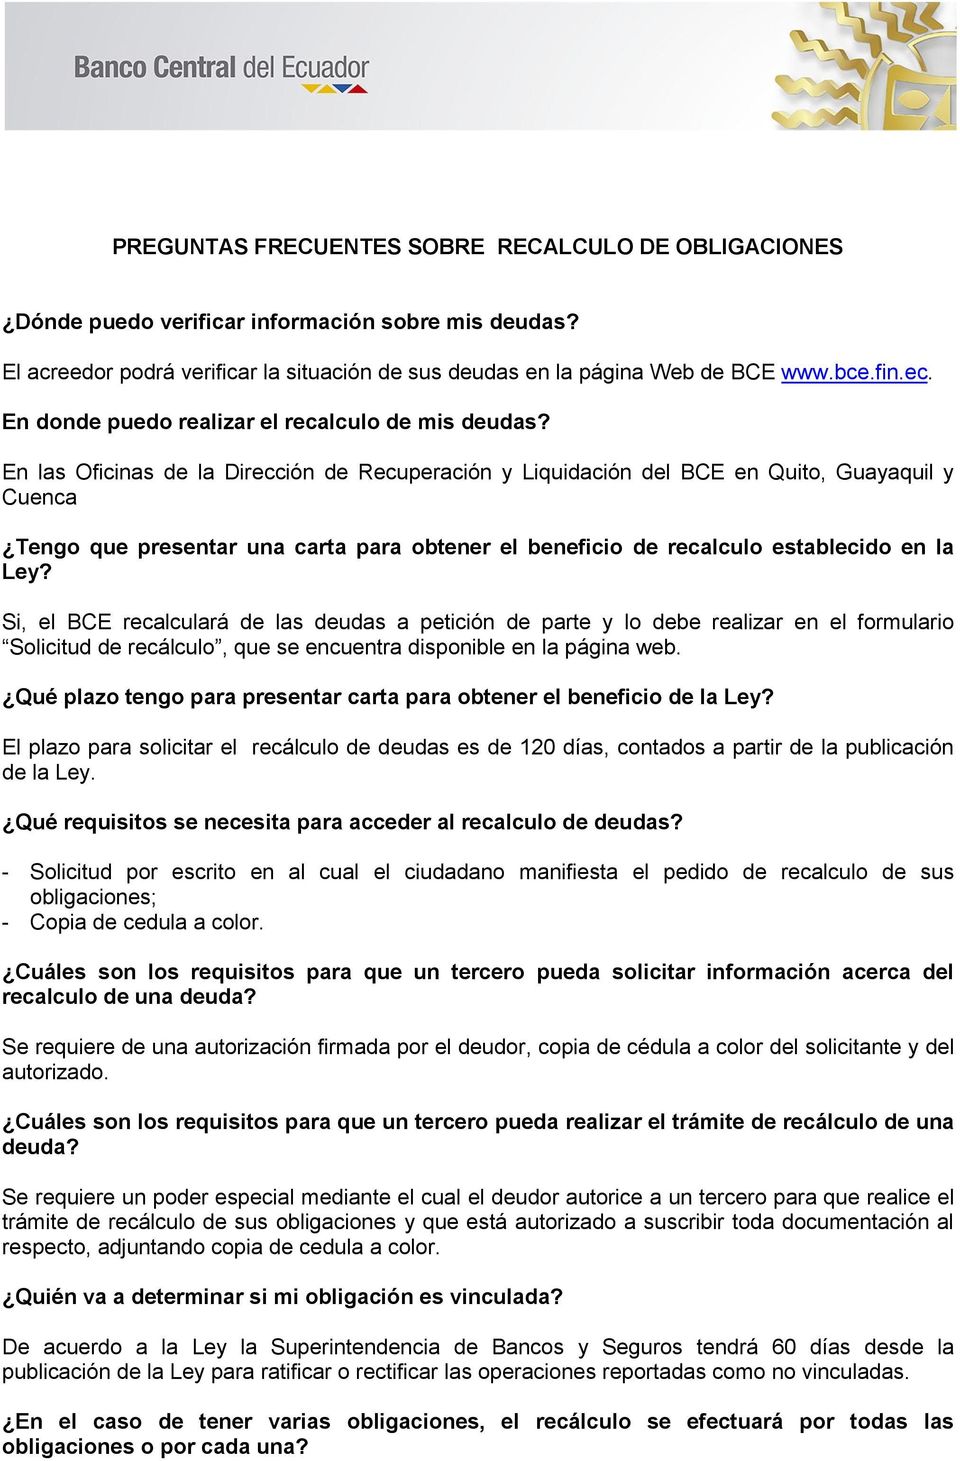 En las Oficinas de la Dirección de Recuperación y Liquidación del BCE en Quito, Guayaquil y Cuenca Tengo que presentar una carta para obtener el beneficio de recalculo establecido en la Ley?